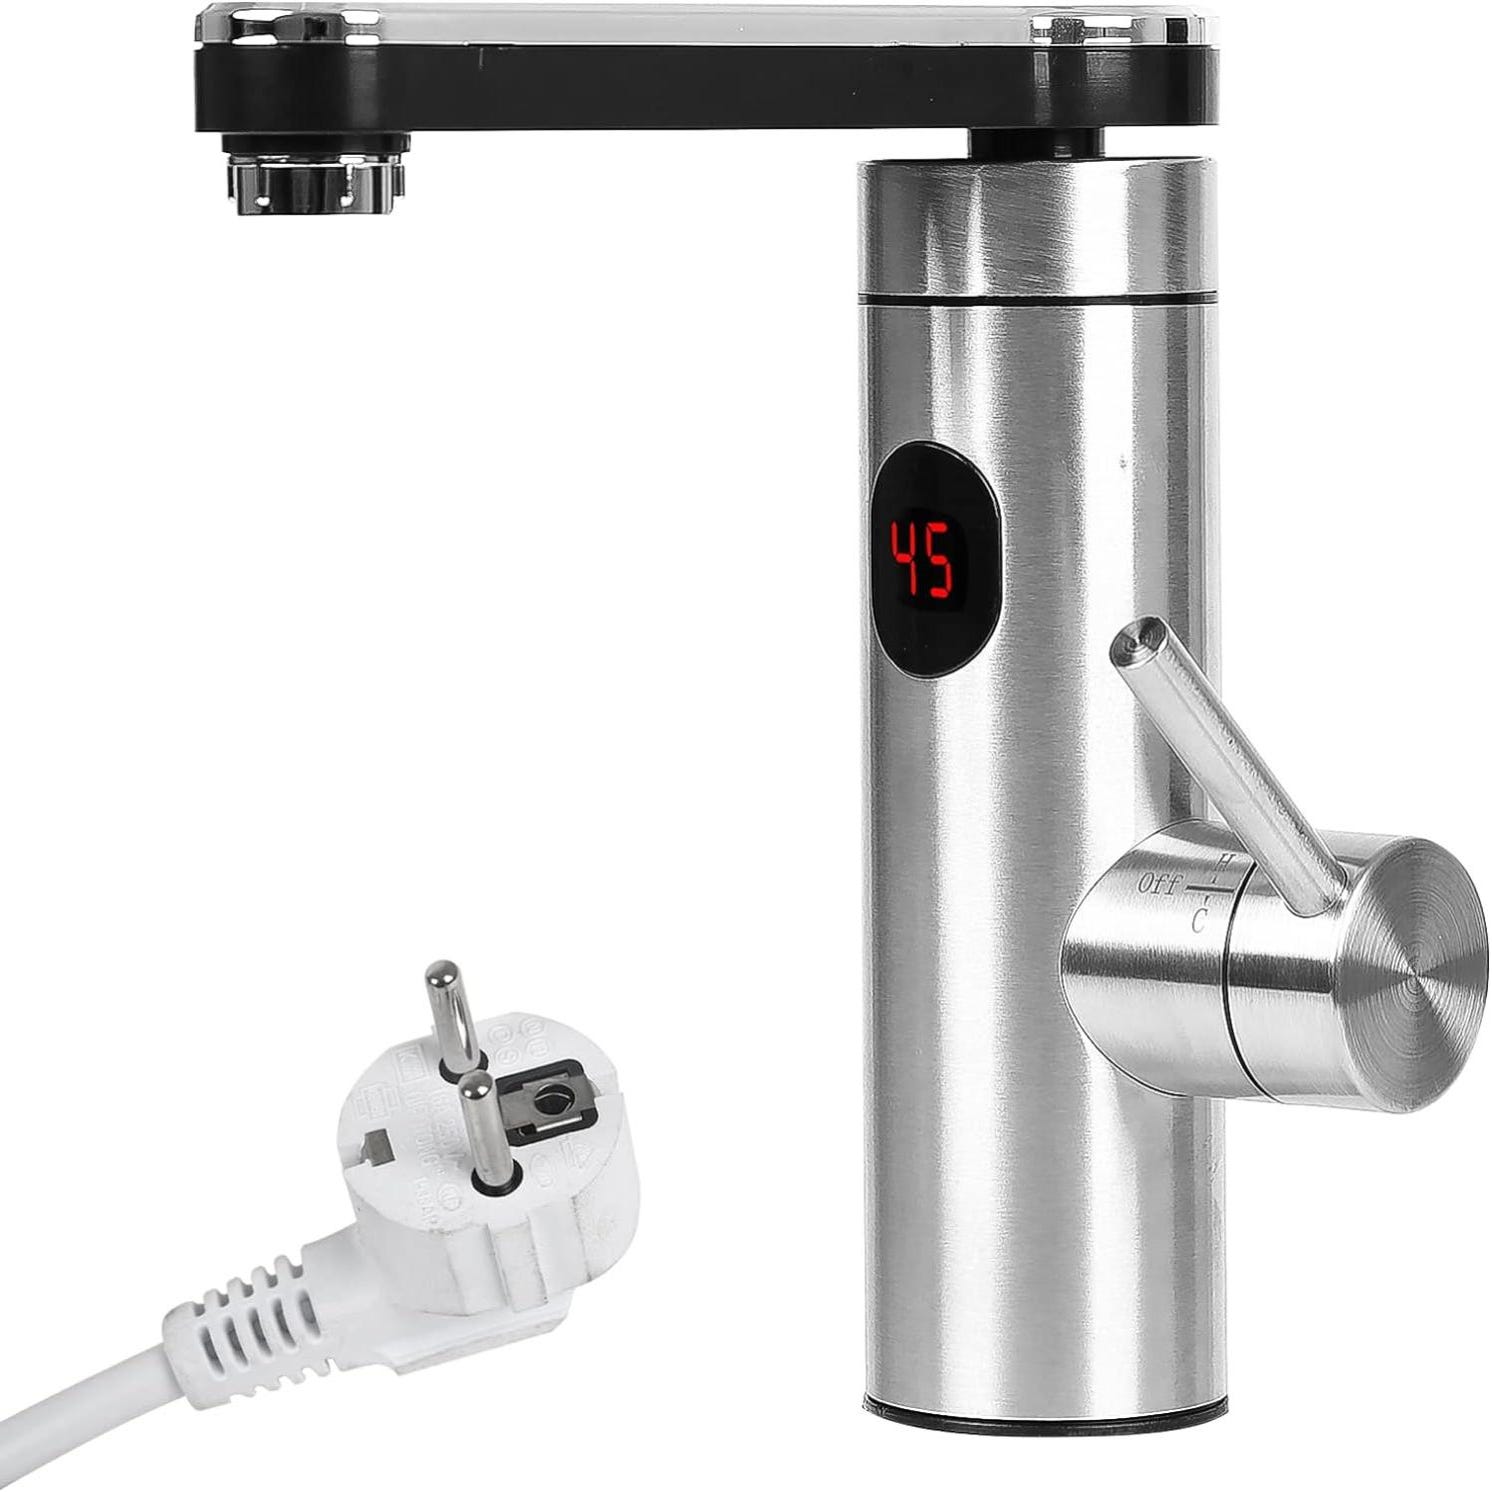 Universal - Micro robinet électrique affichage numérique chauffe